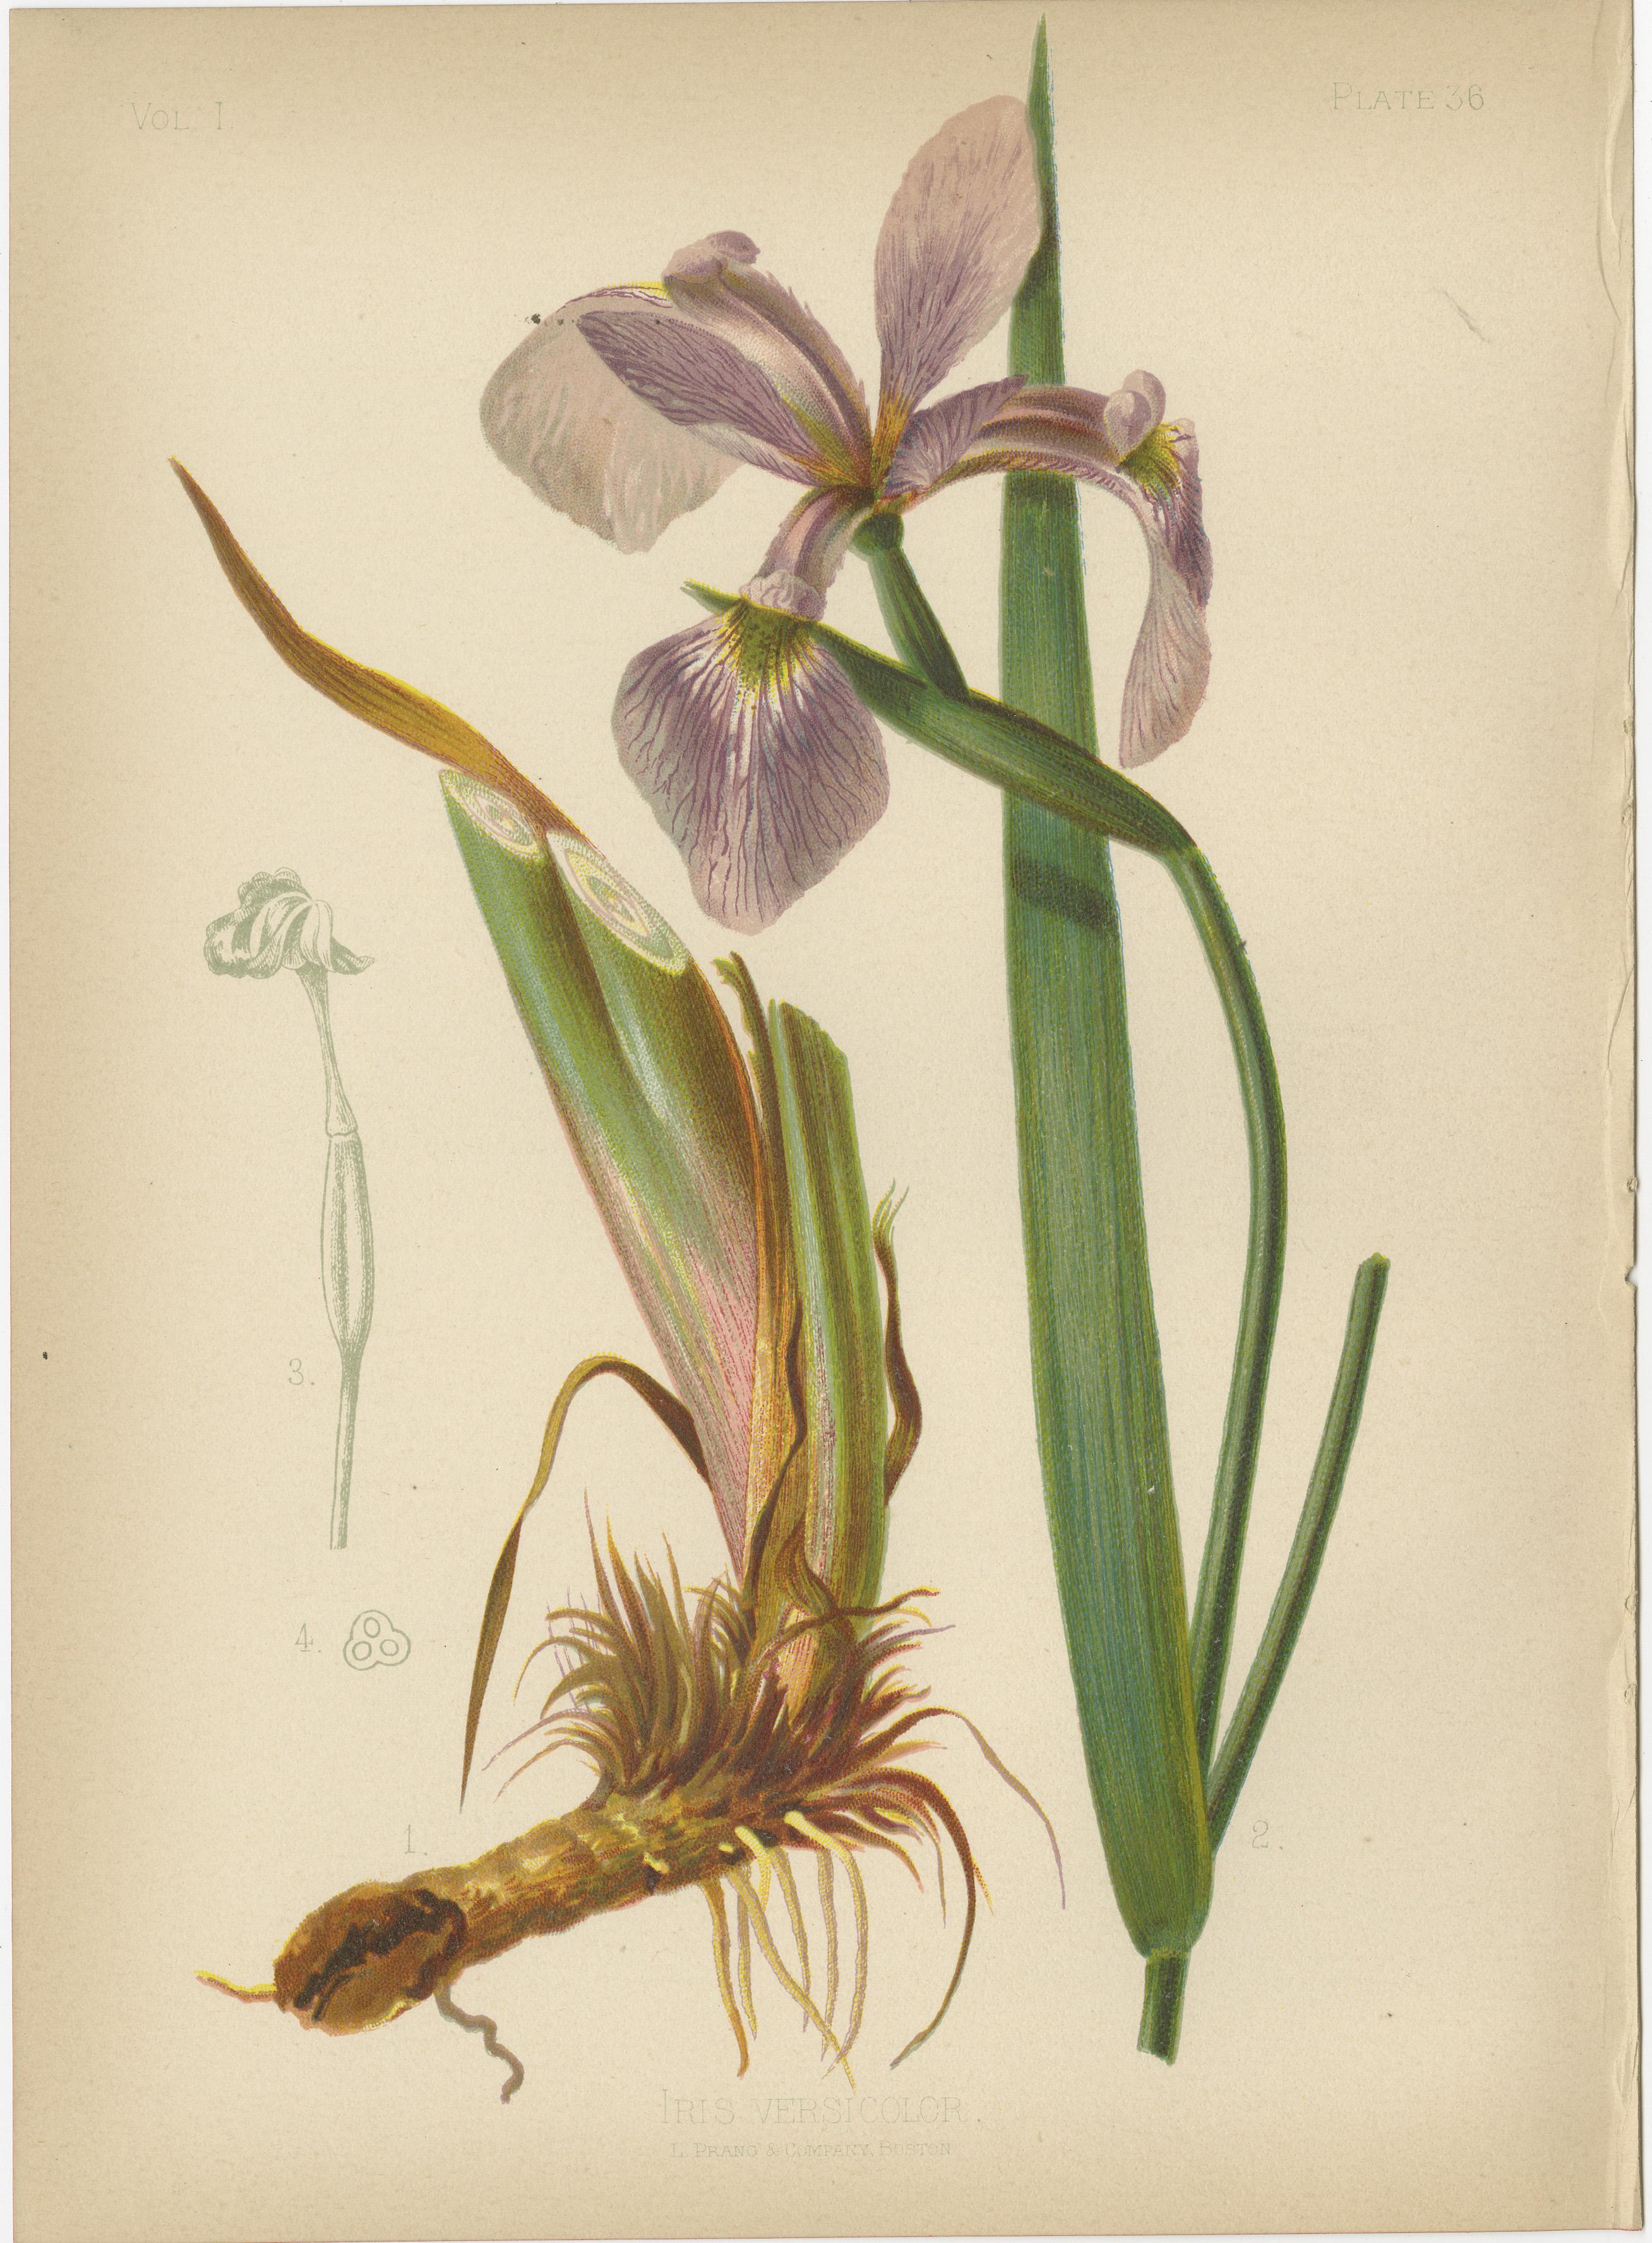 Das Bild zeigt eine Sammlung von sechs Chromolithographien, die verschiedene Pflanzenarten darstellen. Diese Illustrationen zeichnen sich durch ihre botanische Genauigkeit und Ästhetik aus, die typisch für naturkundliche Publikationen des späten 19.